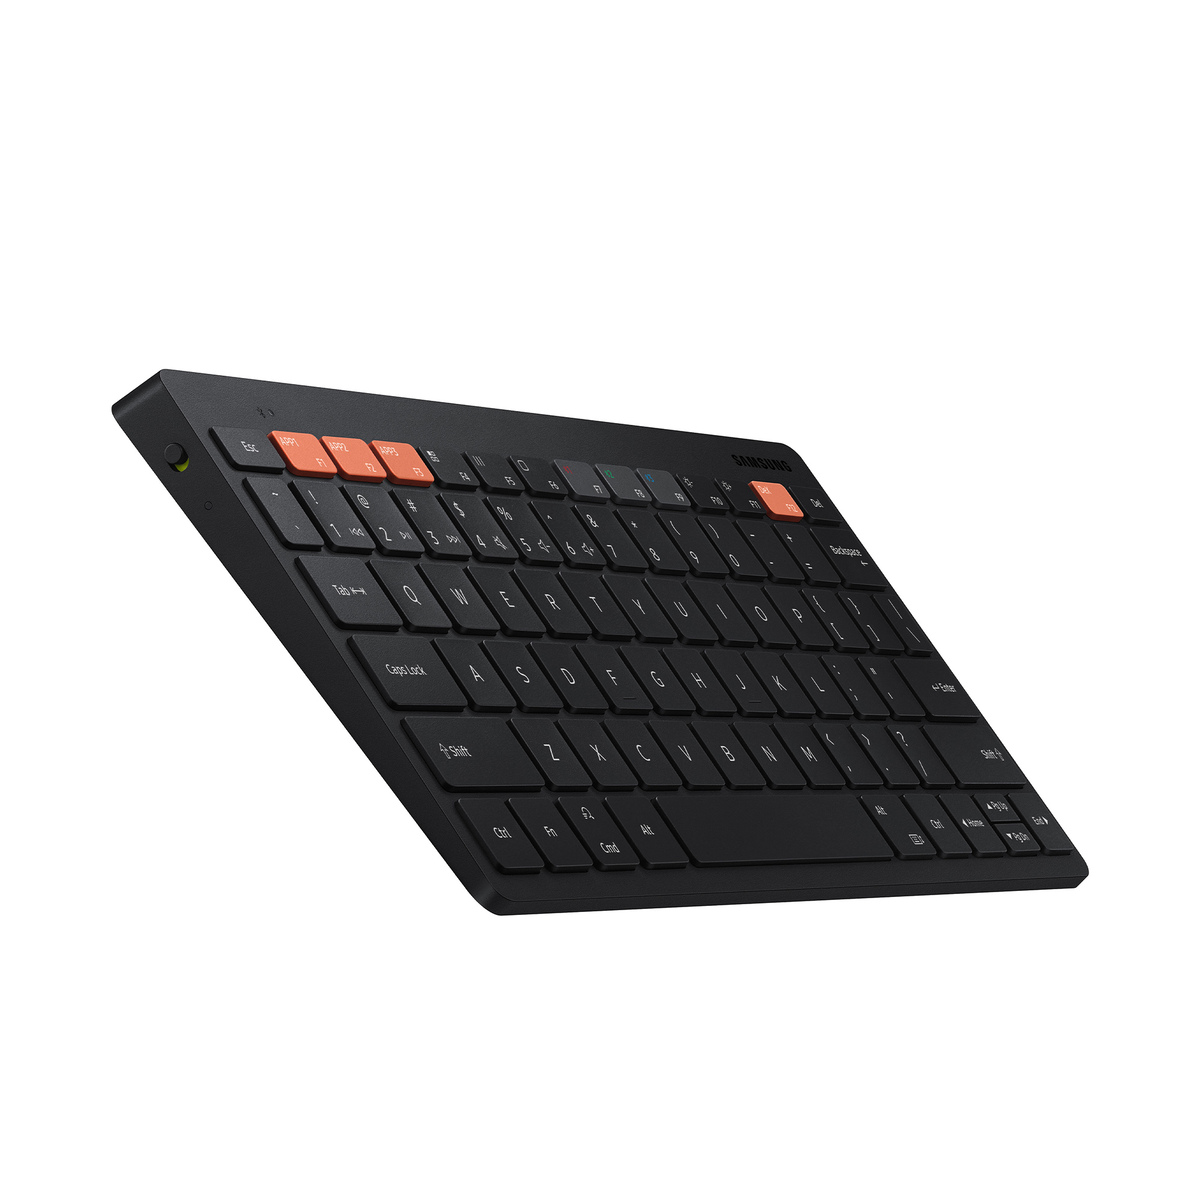 Samsung Smart Keyboard Trio 500 (EJ-B3400UBEGAE),Black